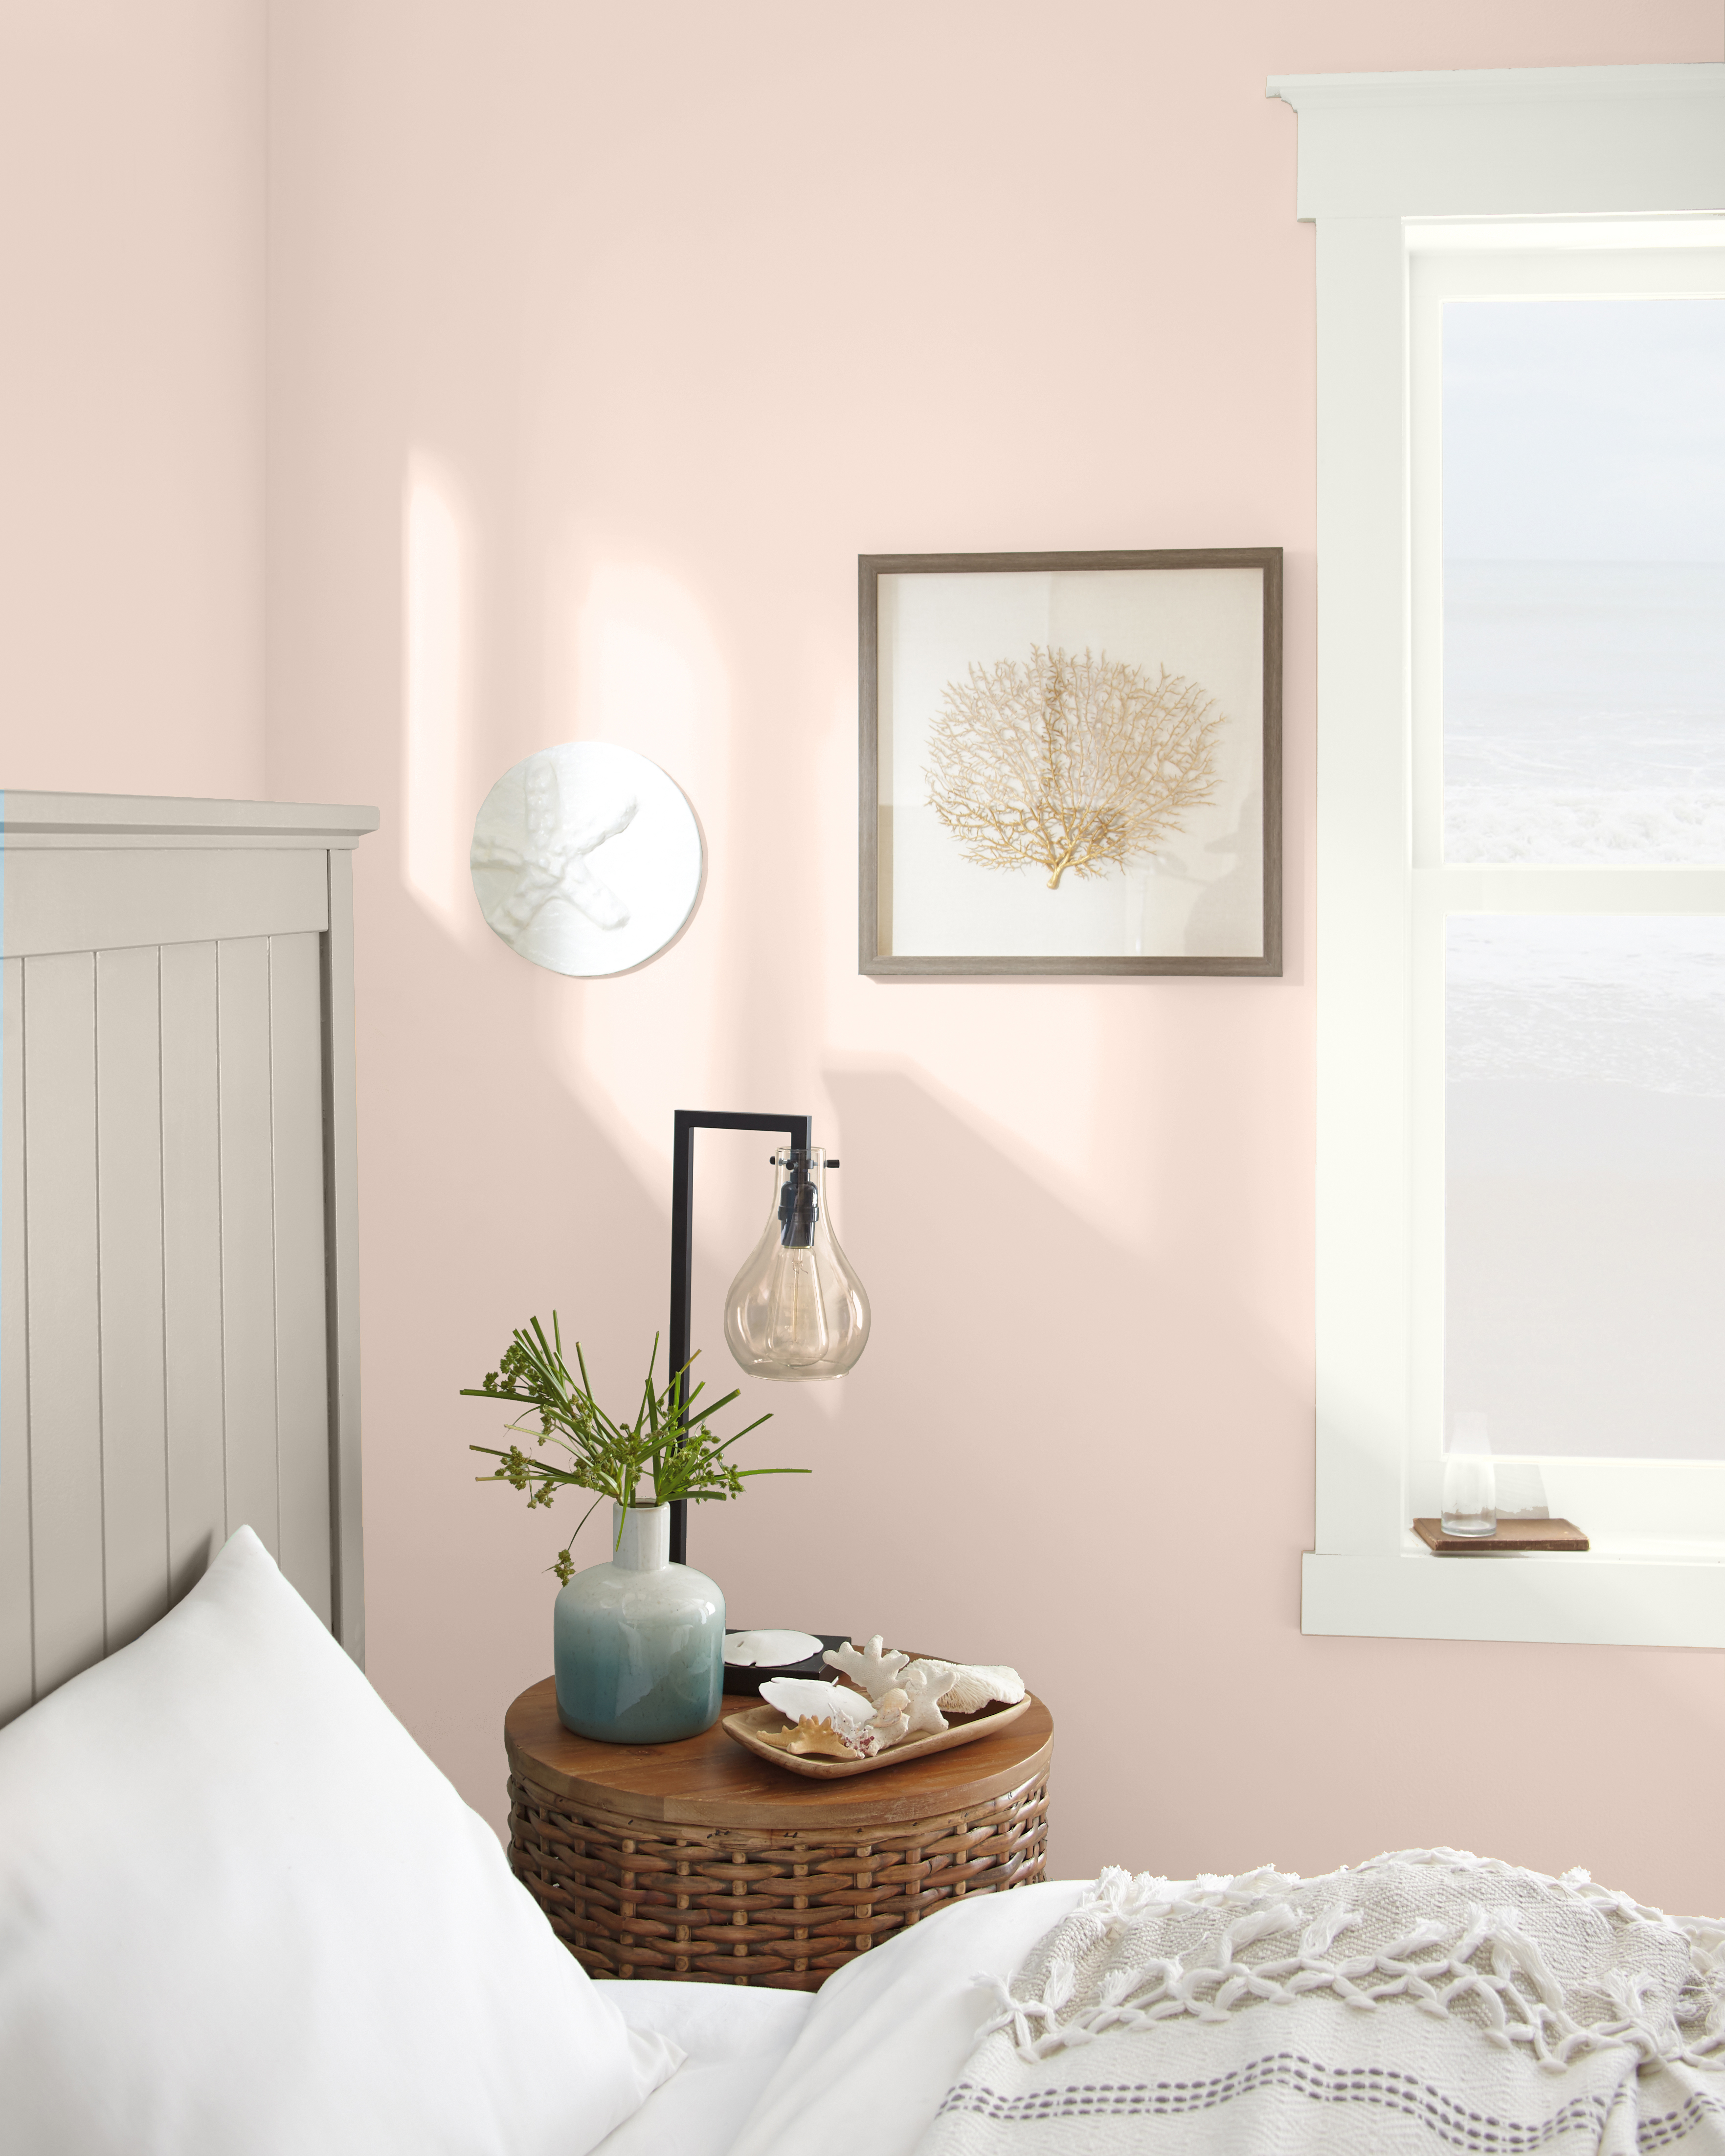 Une chambre d'inspiration bord de mer avec des murs en rose clair. Des tons neutres sont utilisés dans toute la chambre.